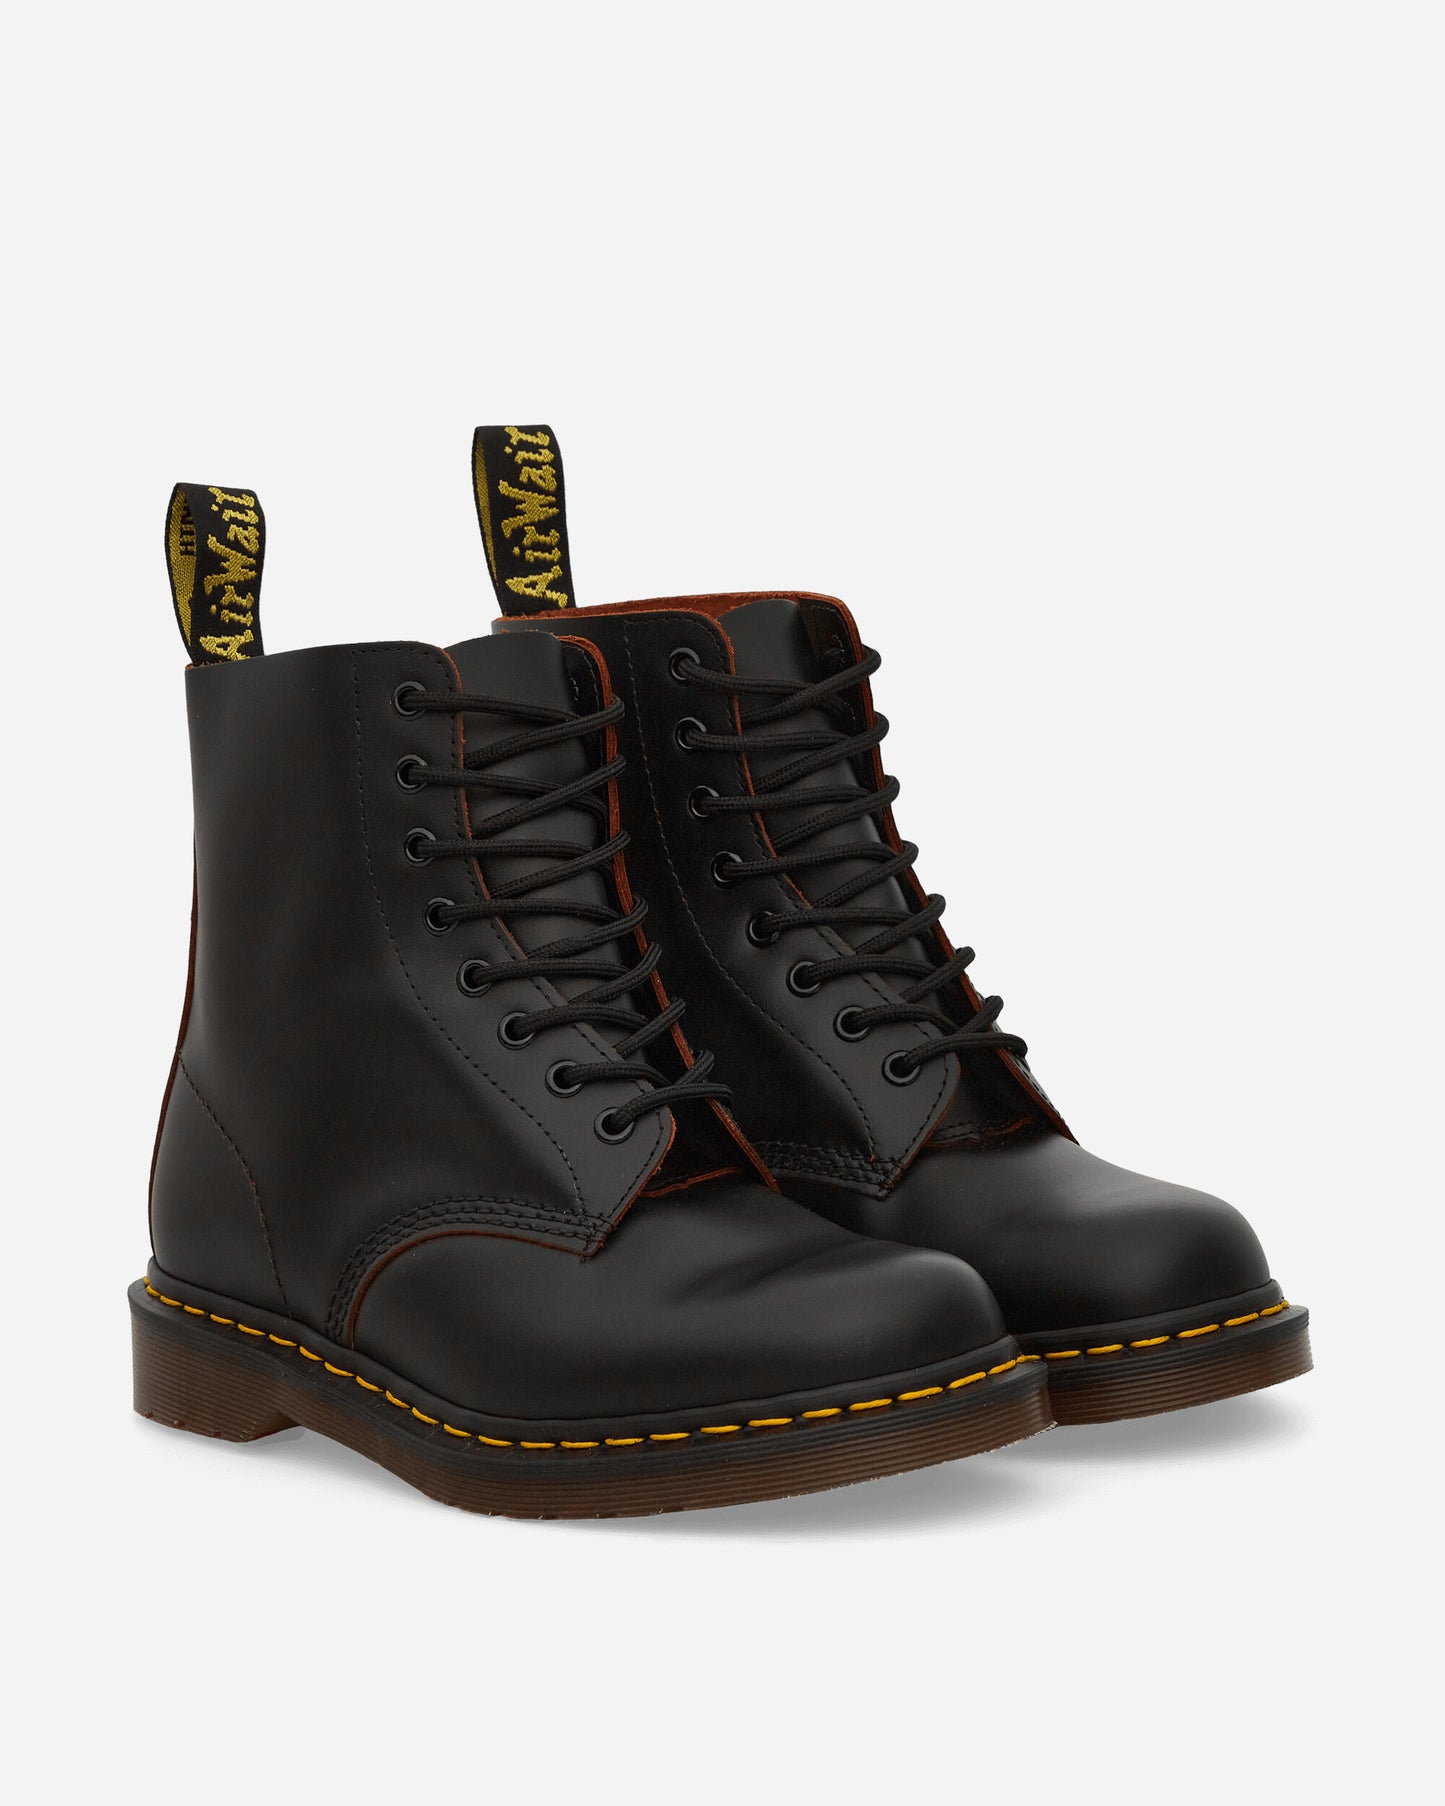 Dr. Martens Vintage 1460 Black Boots Laced Up Boots 12308001 BLACK